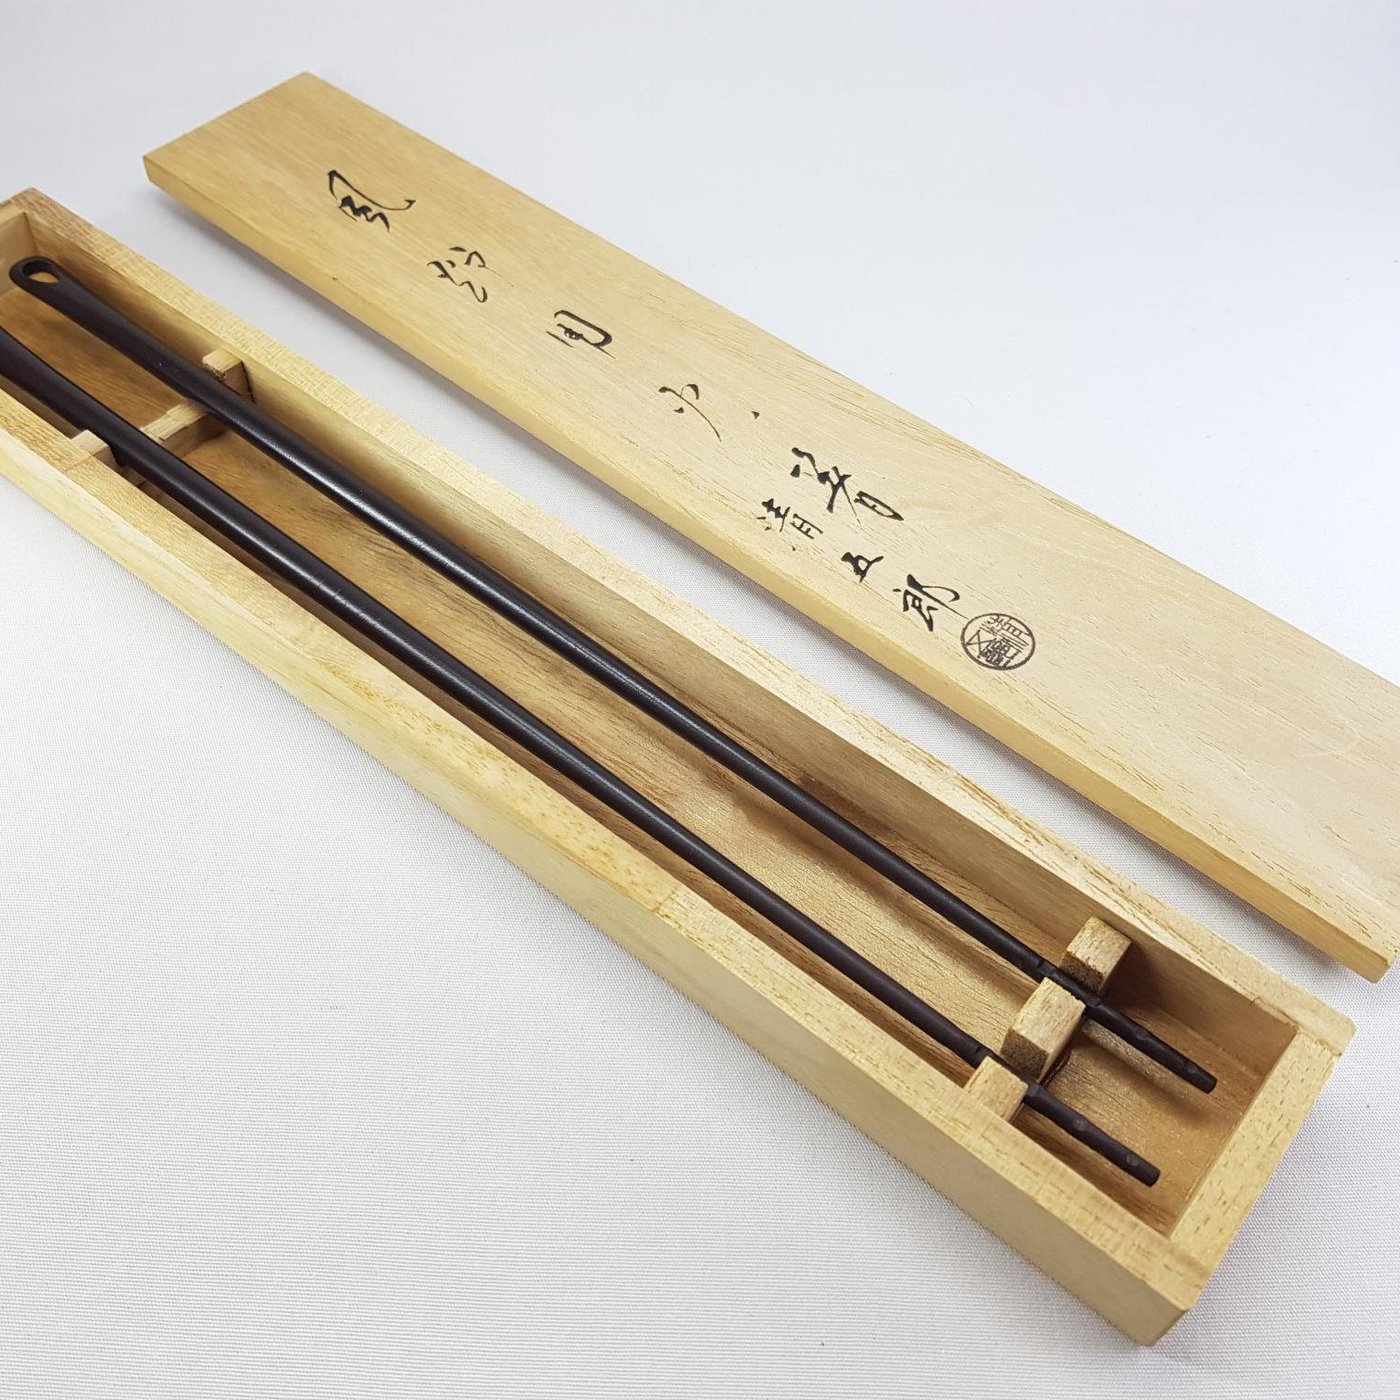 《小丸子の家》初代木村清五郎(清雲) 銅製火箸菓子箸銅箸火筷炭夾 